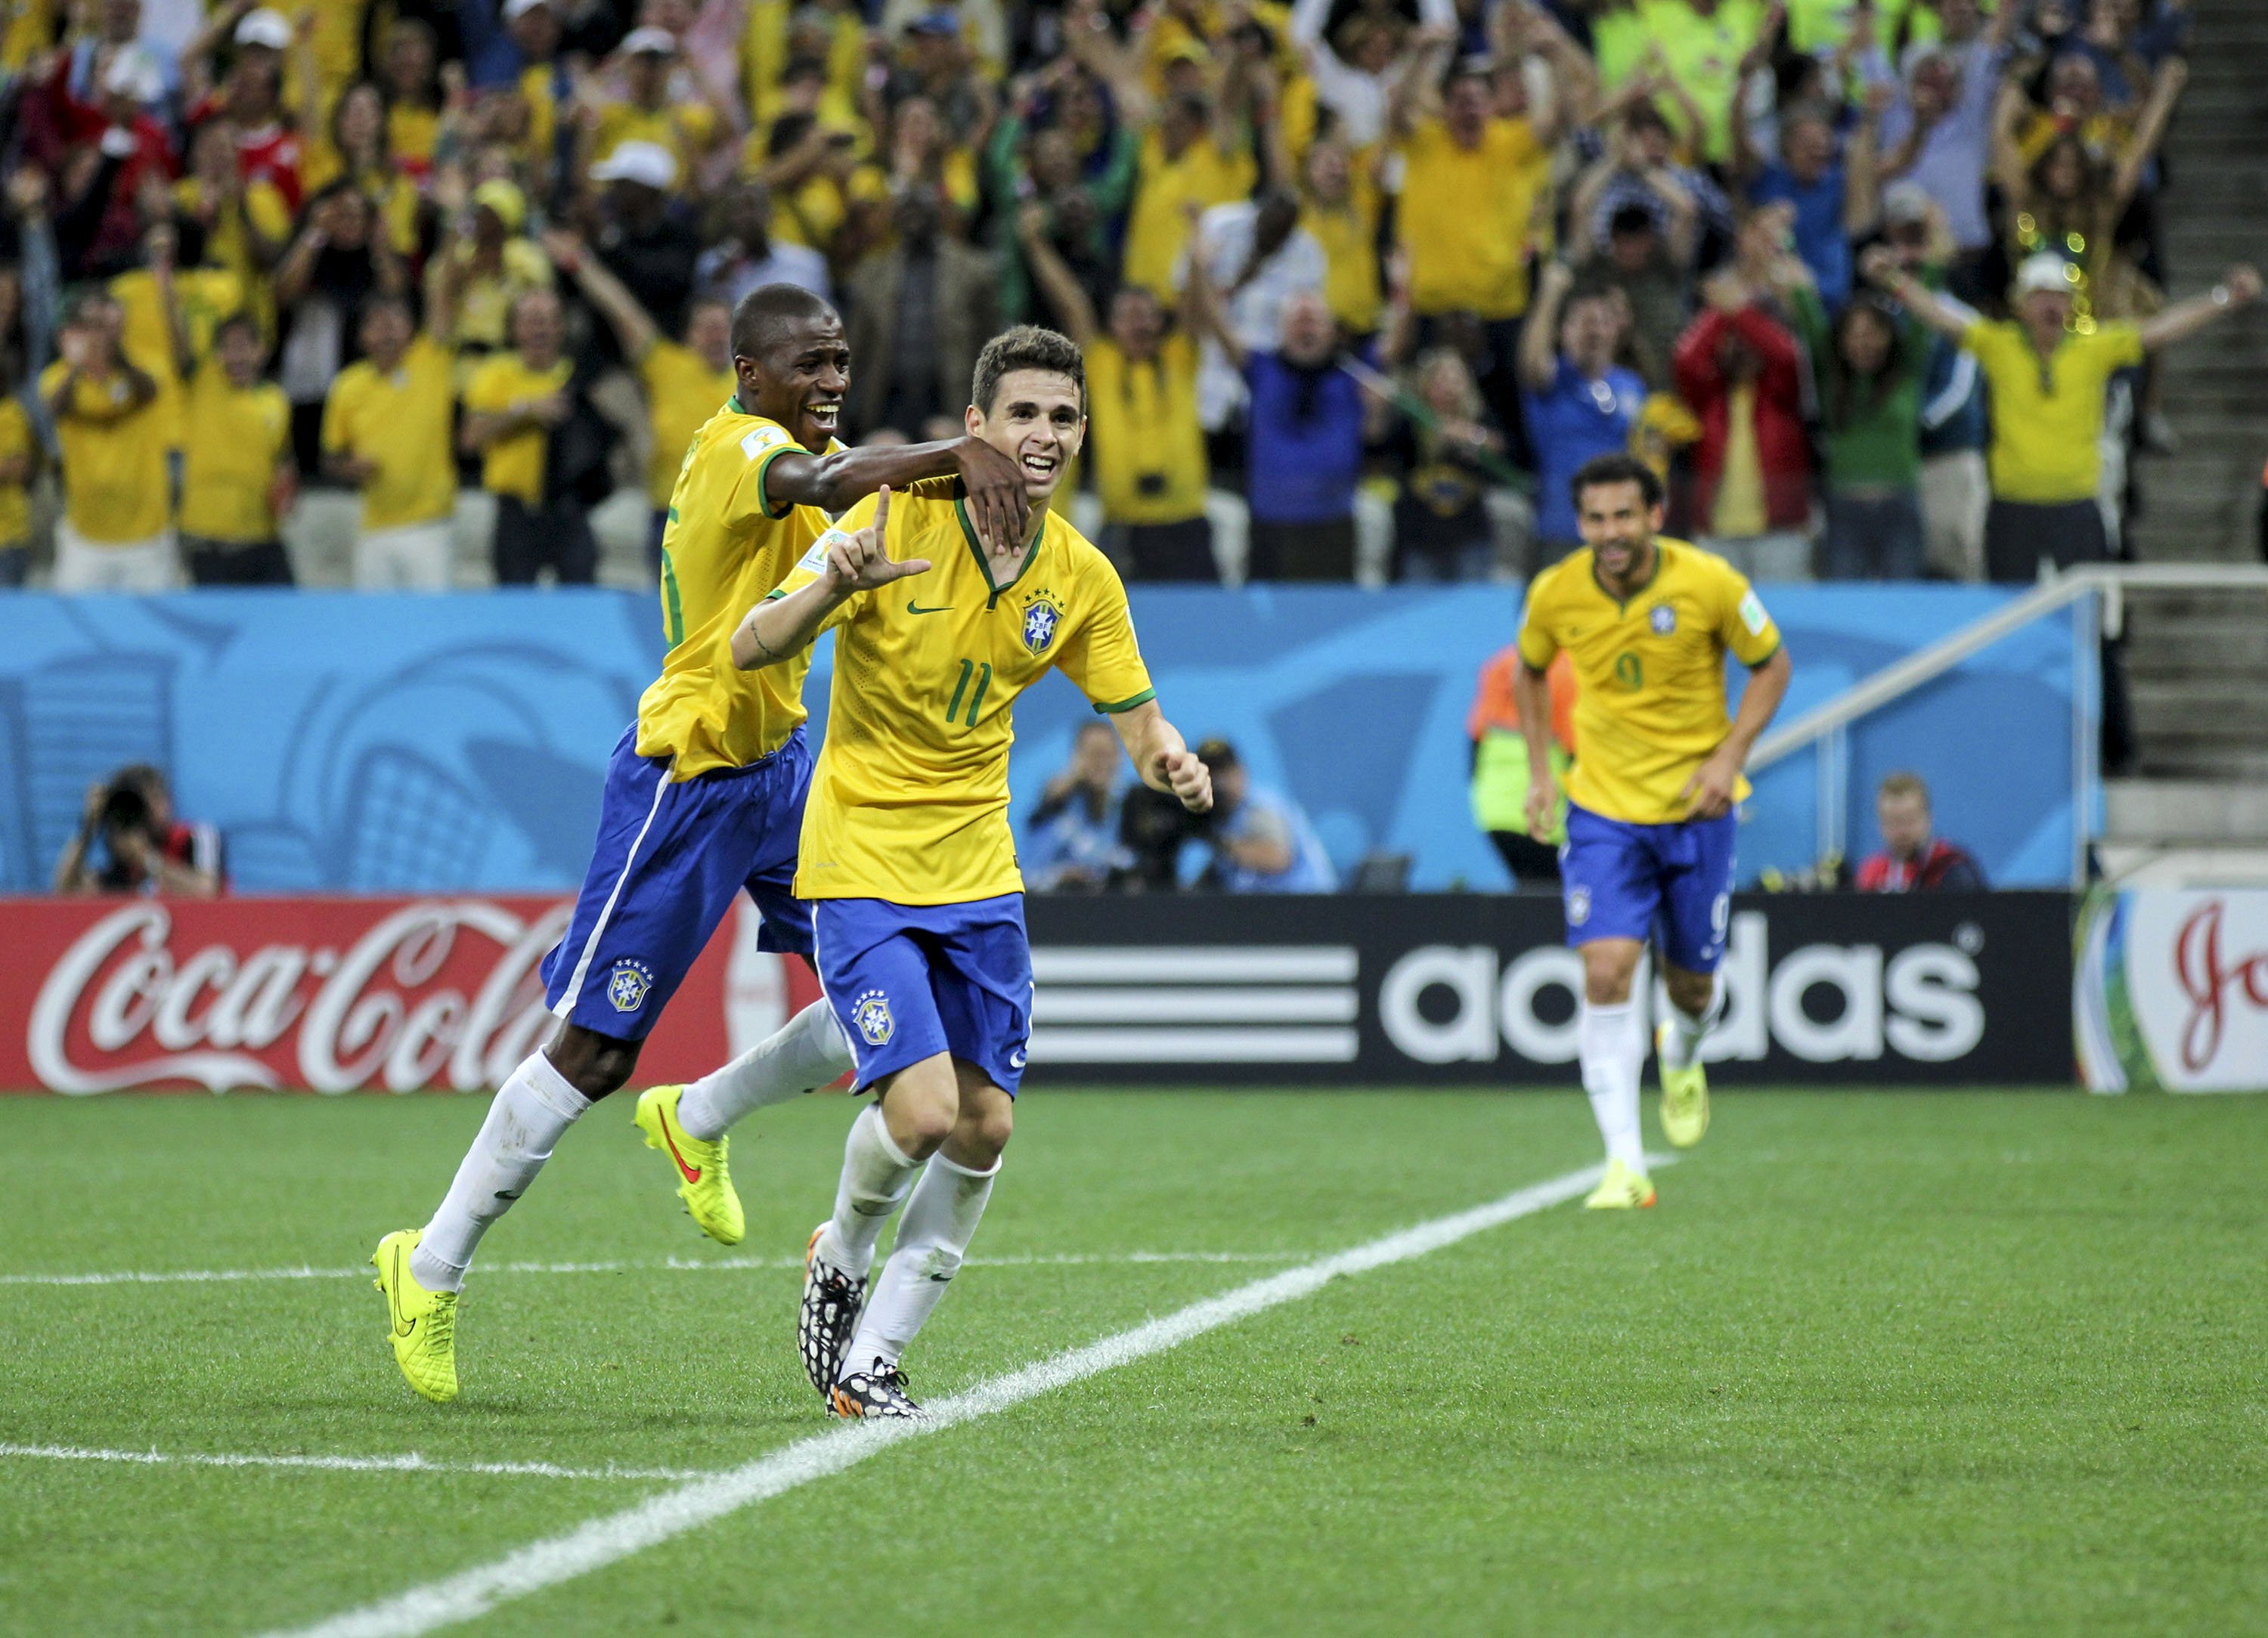  World Cup 2014 Brazil Final Match Famous Football